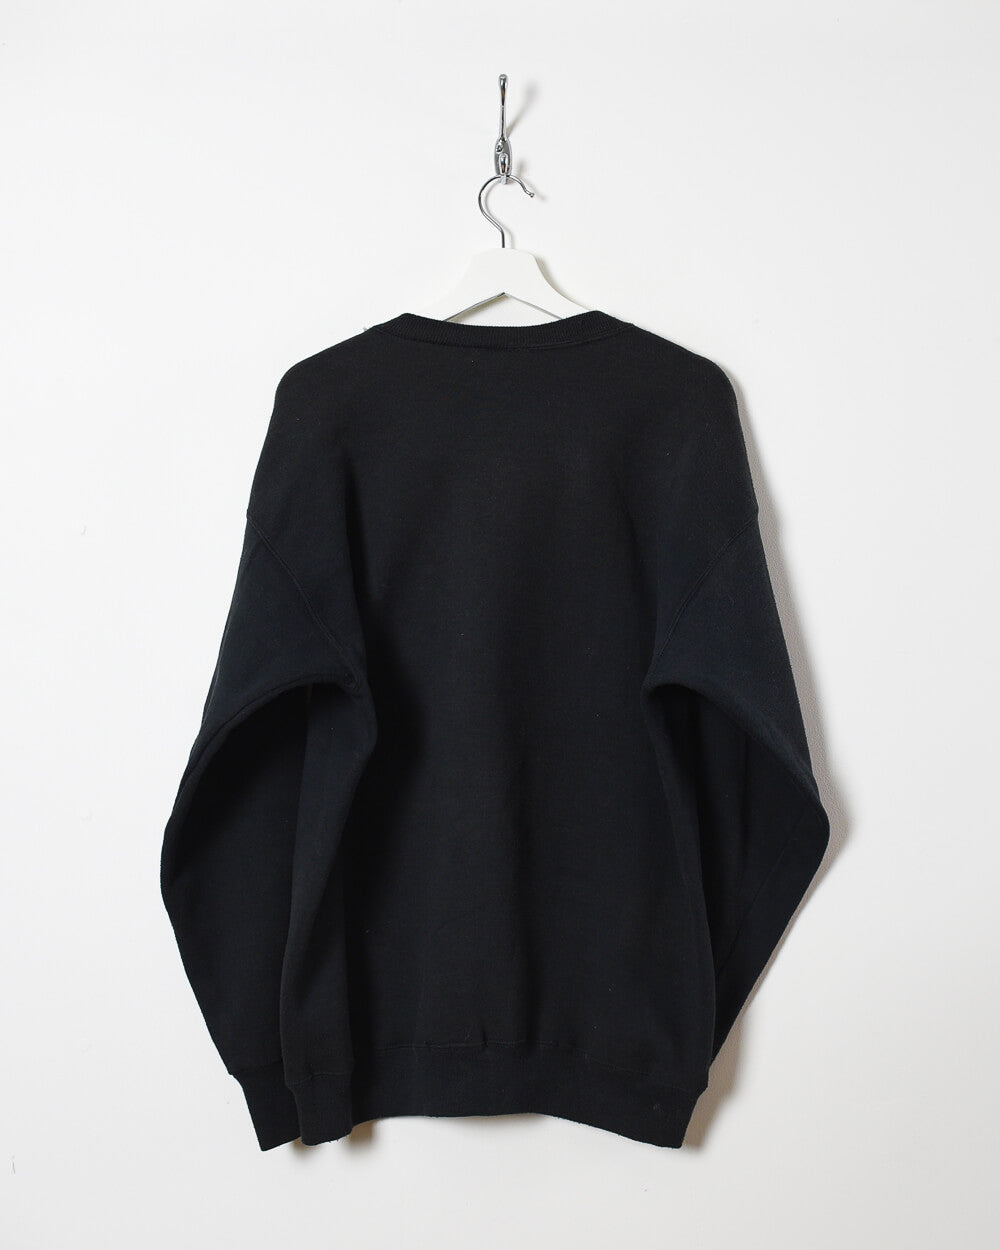 Black Lee Princeton Sweatshirt - Large